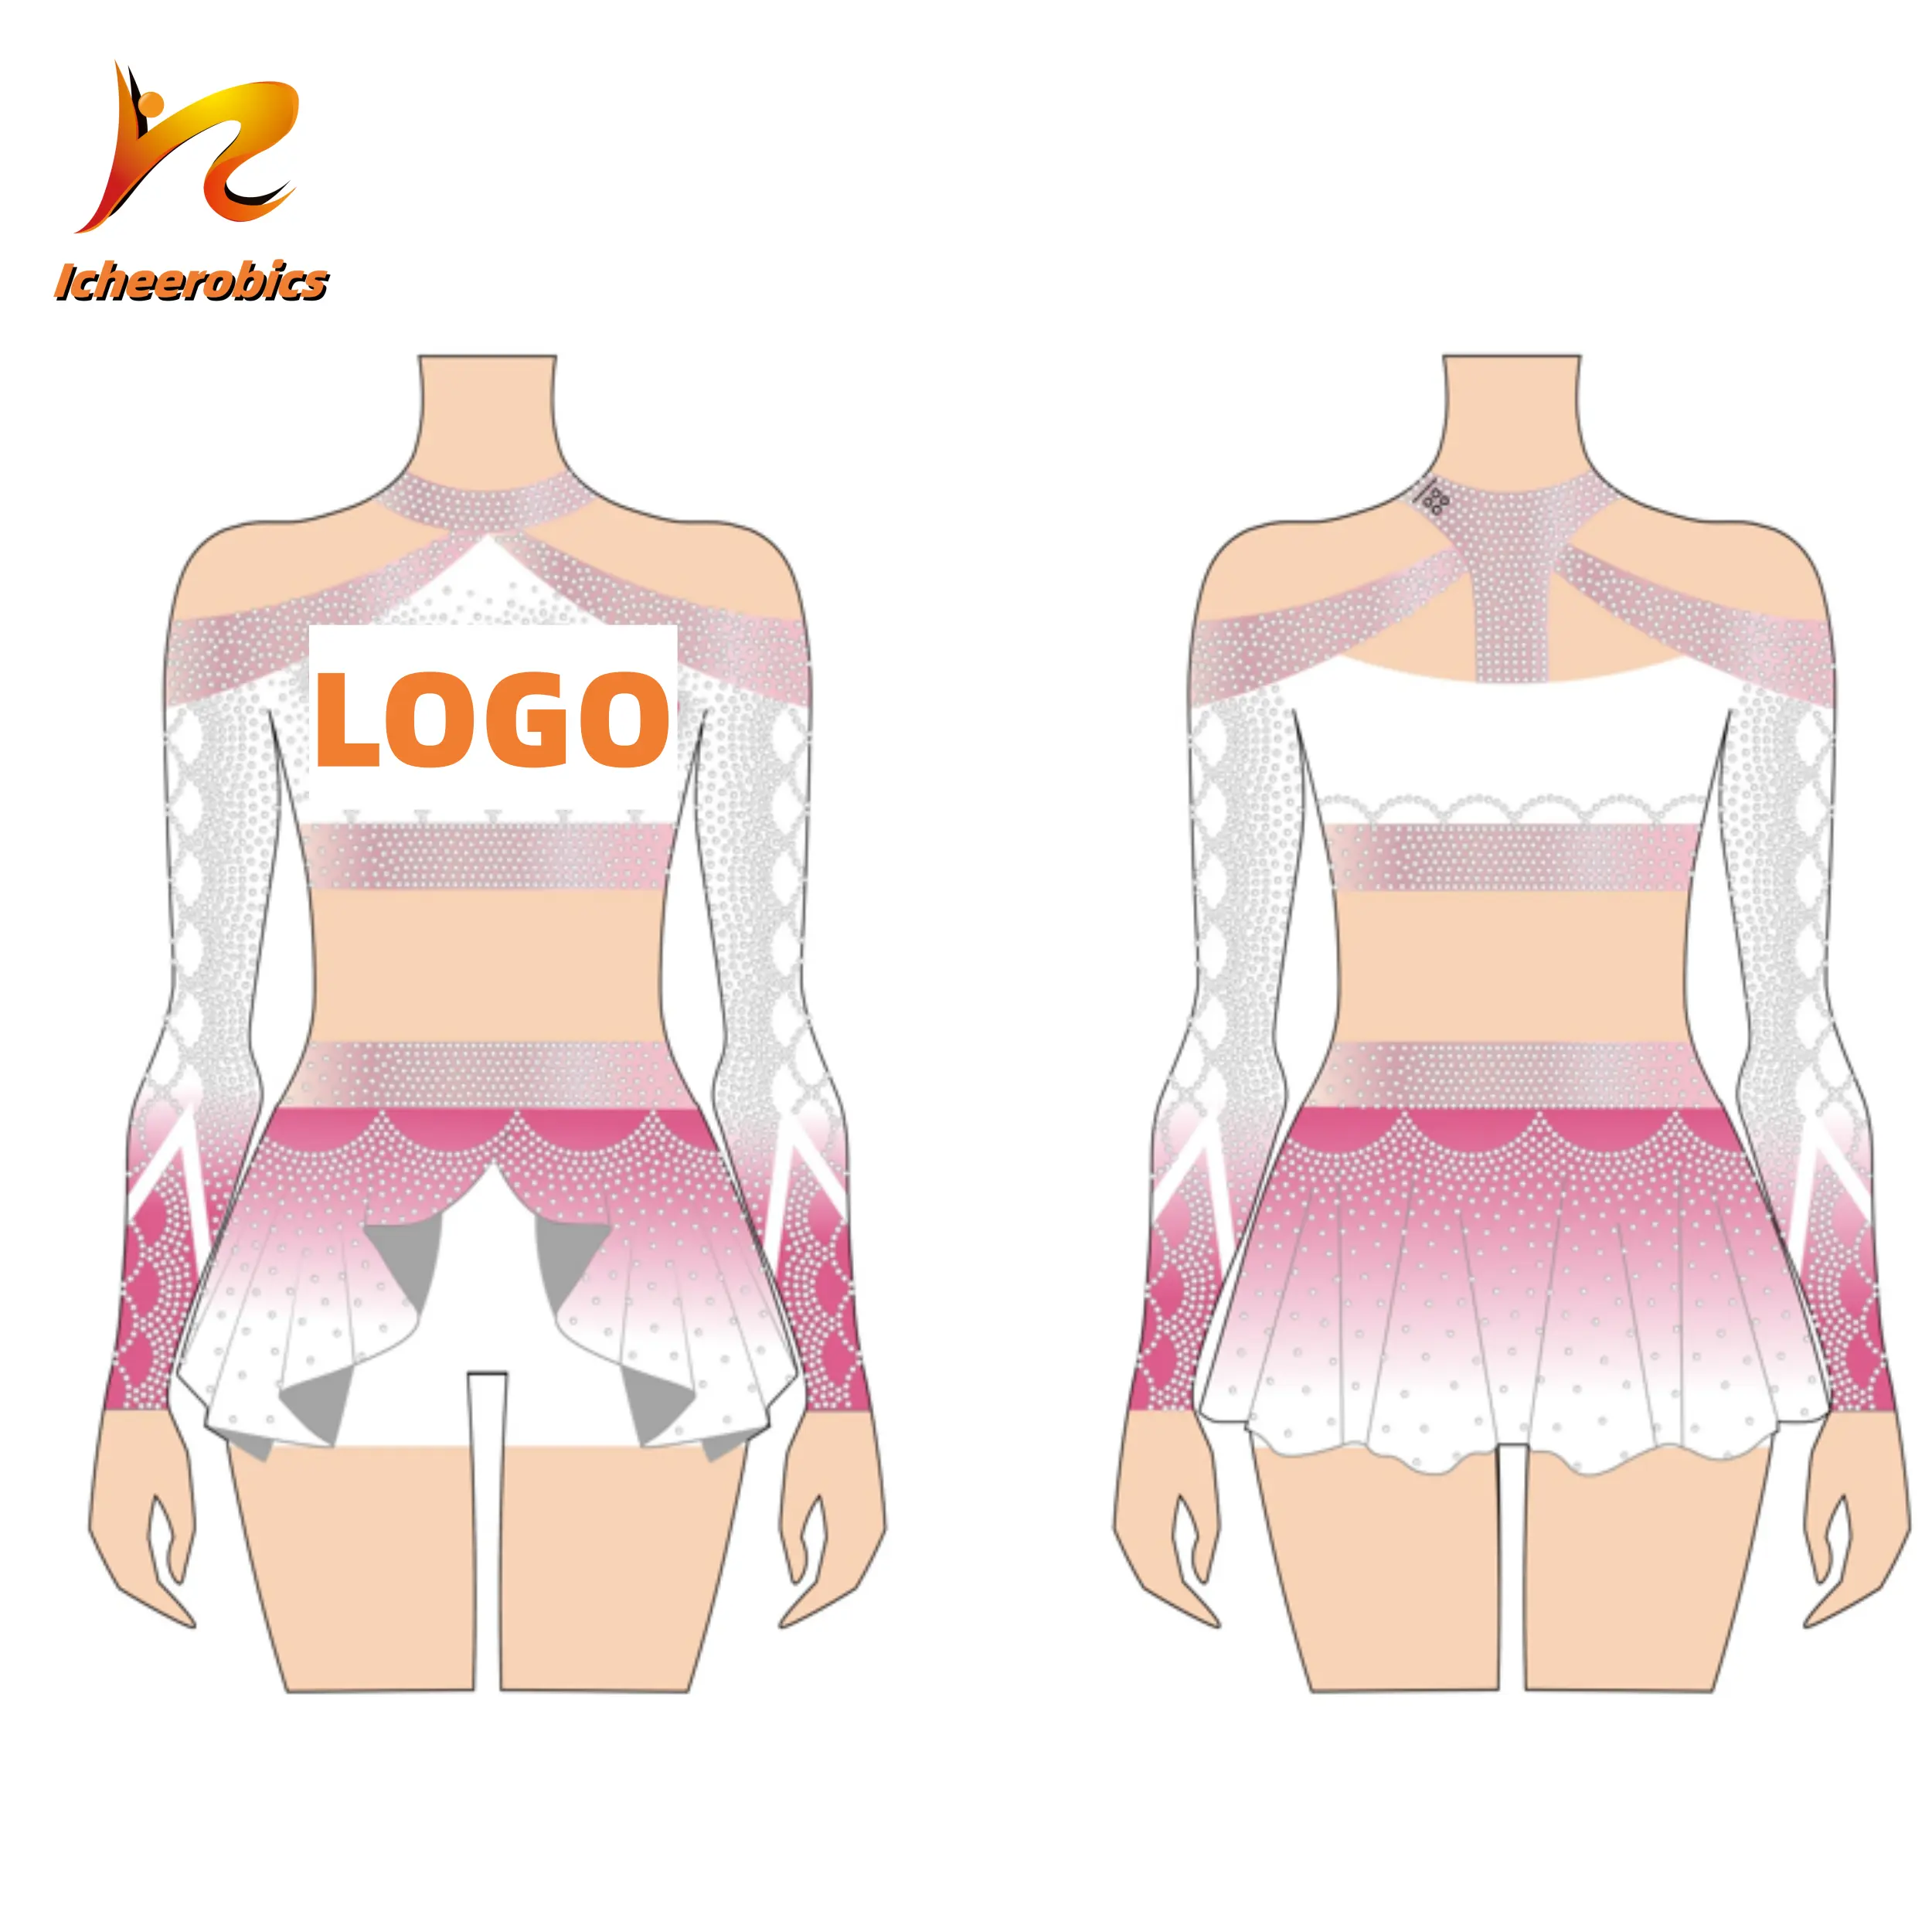 Icheer obic Entwerfen Sie Ihre eigenen rosa Cheerleader-Kostüme in Unterwäsche Cheer Leading Uniformen Varsity